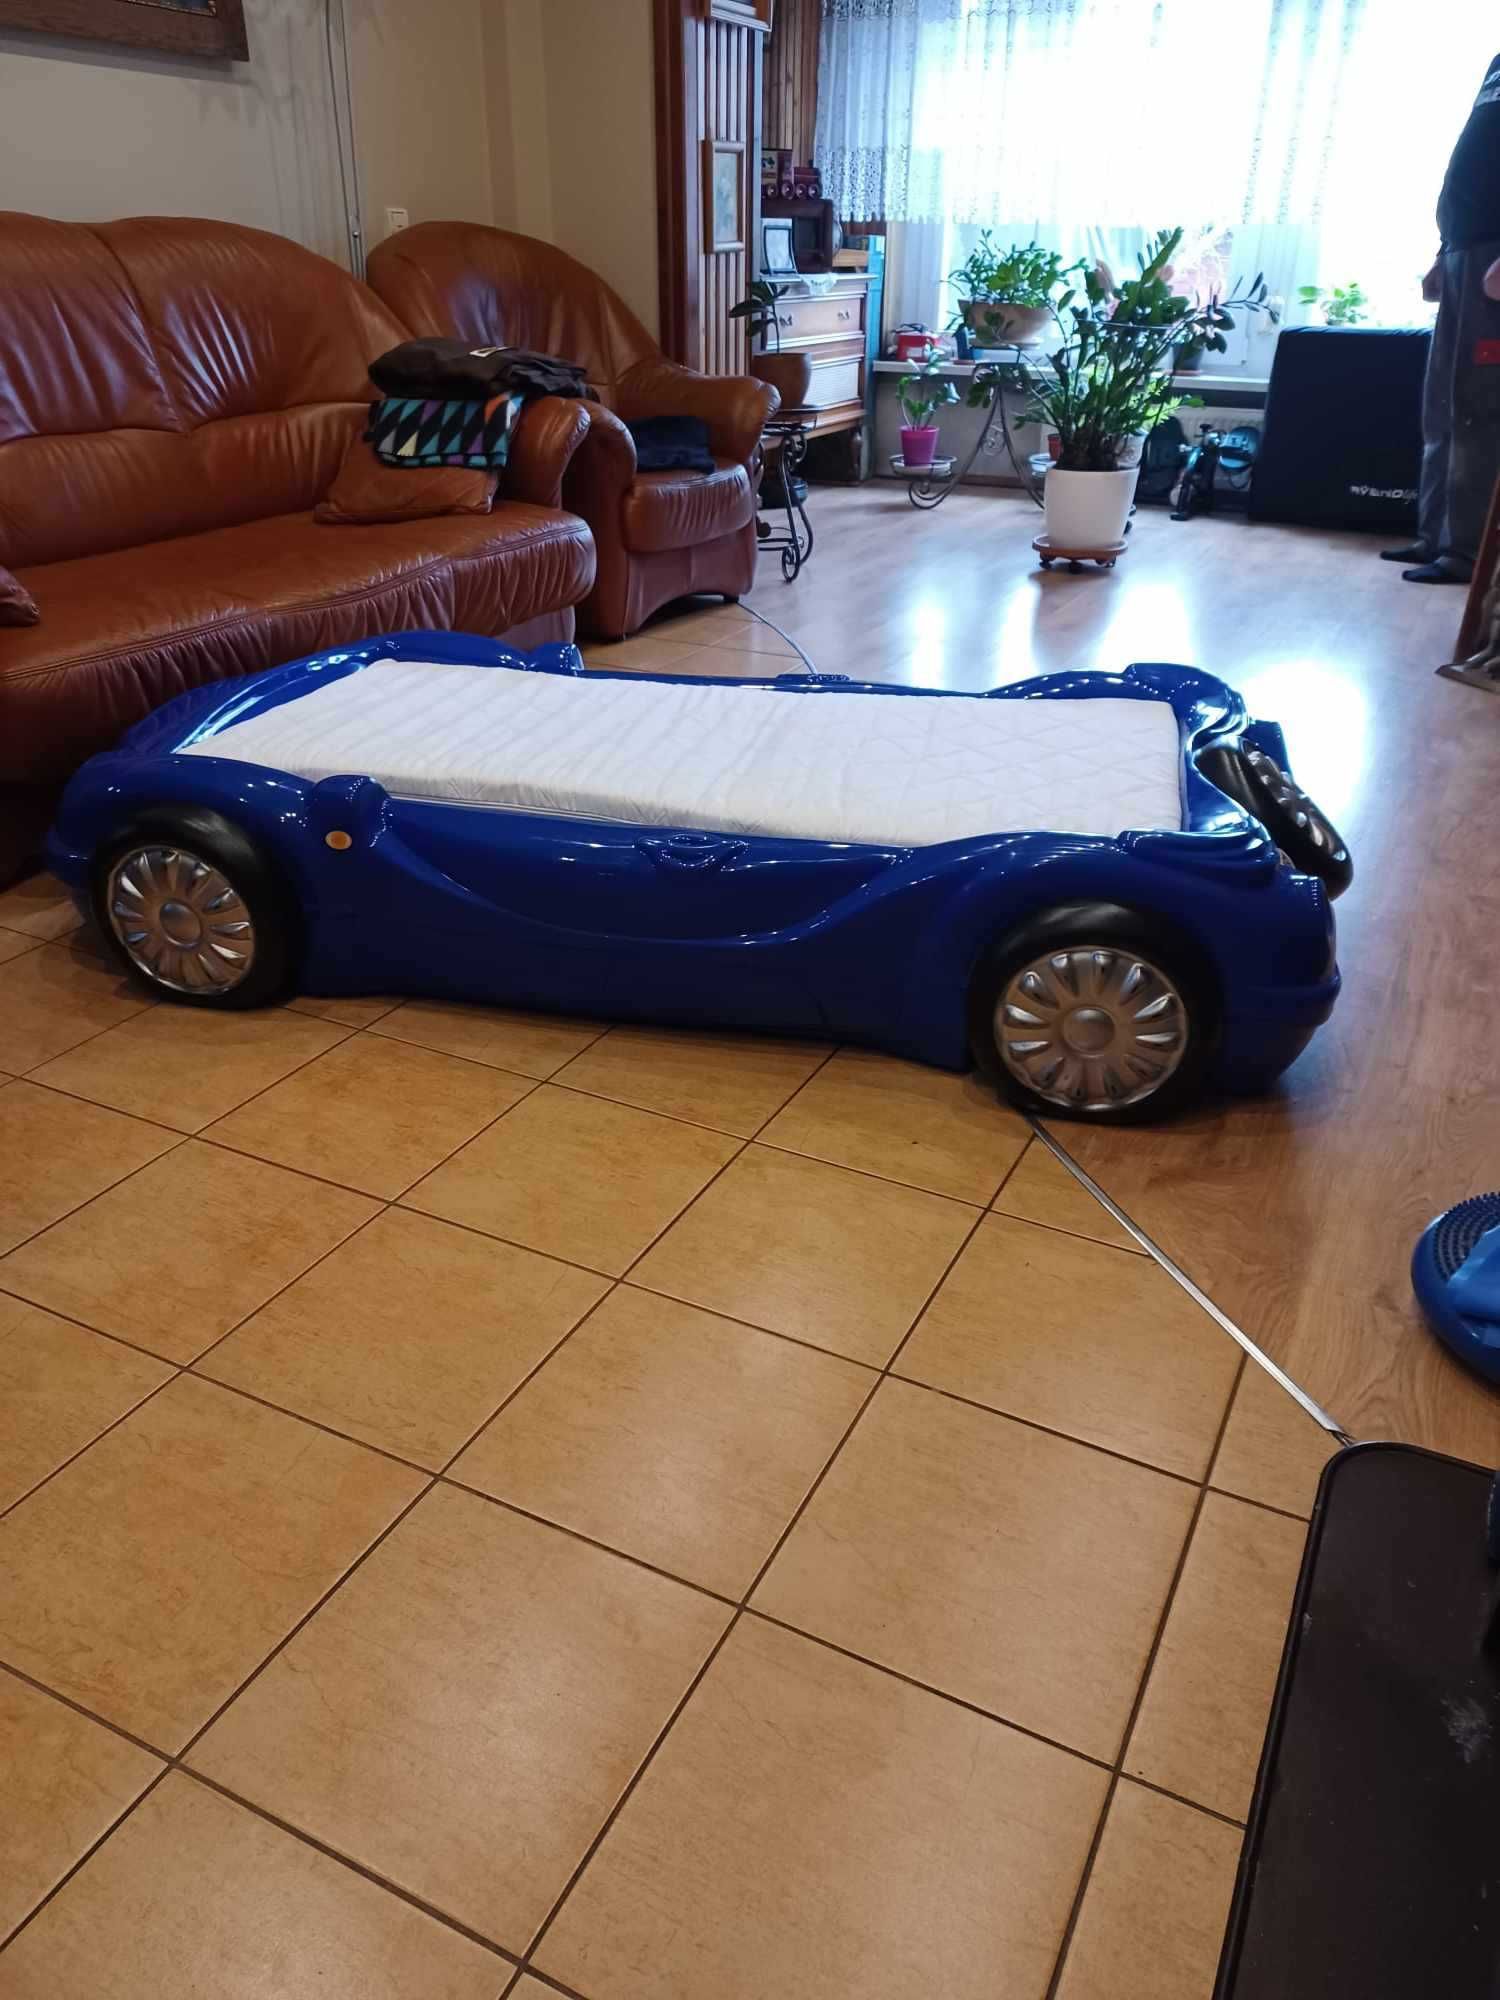 Łóżko dla dziecka samochód